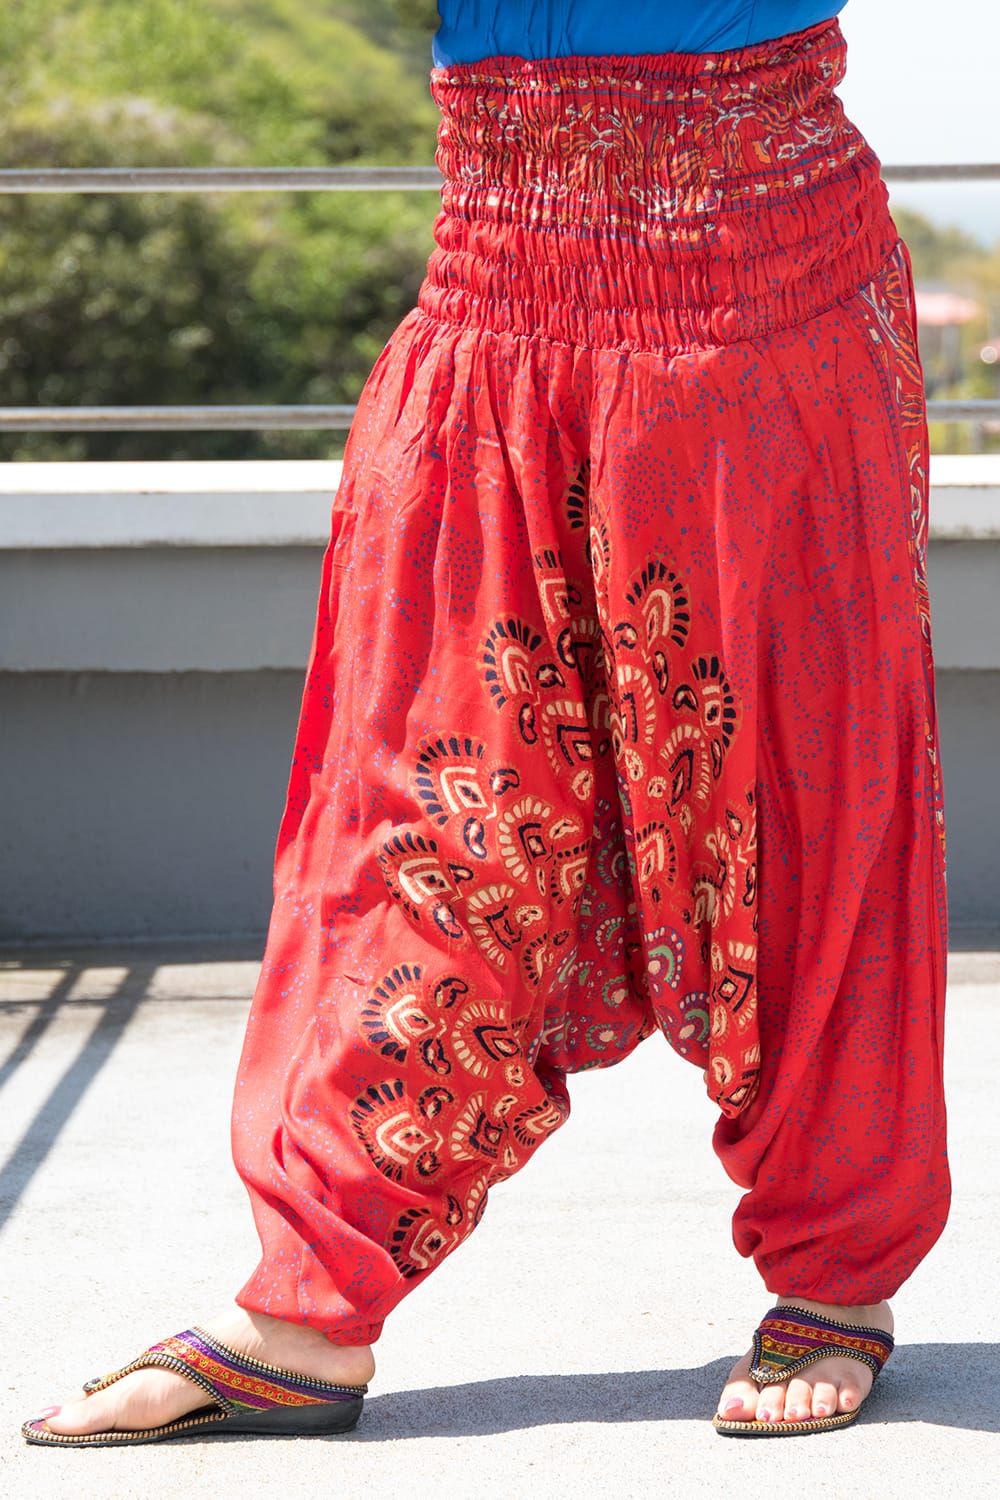 18％OFFコットン パンツ 男性 エスニック アジア 女性 マンダラプリントのアラジンパンツ エスニック衣料 ボトムス、パンツ 